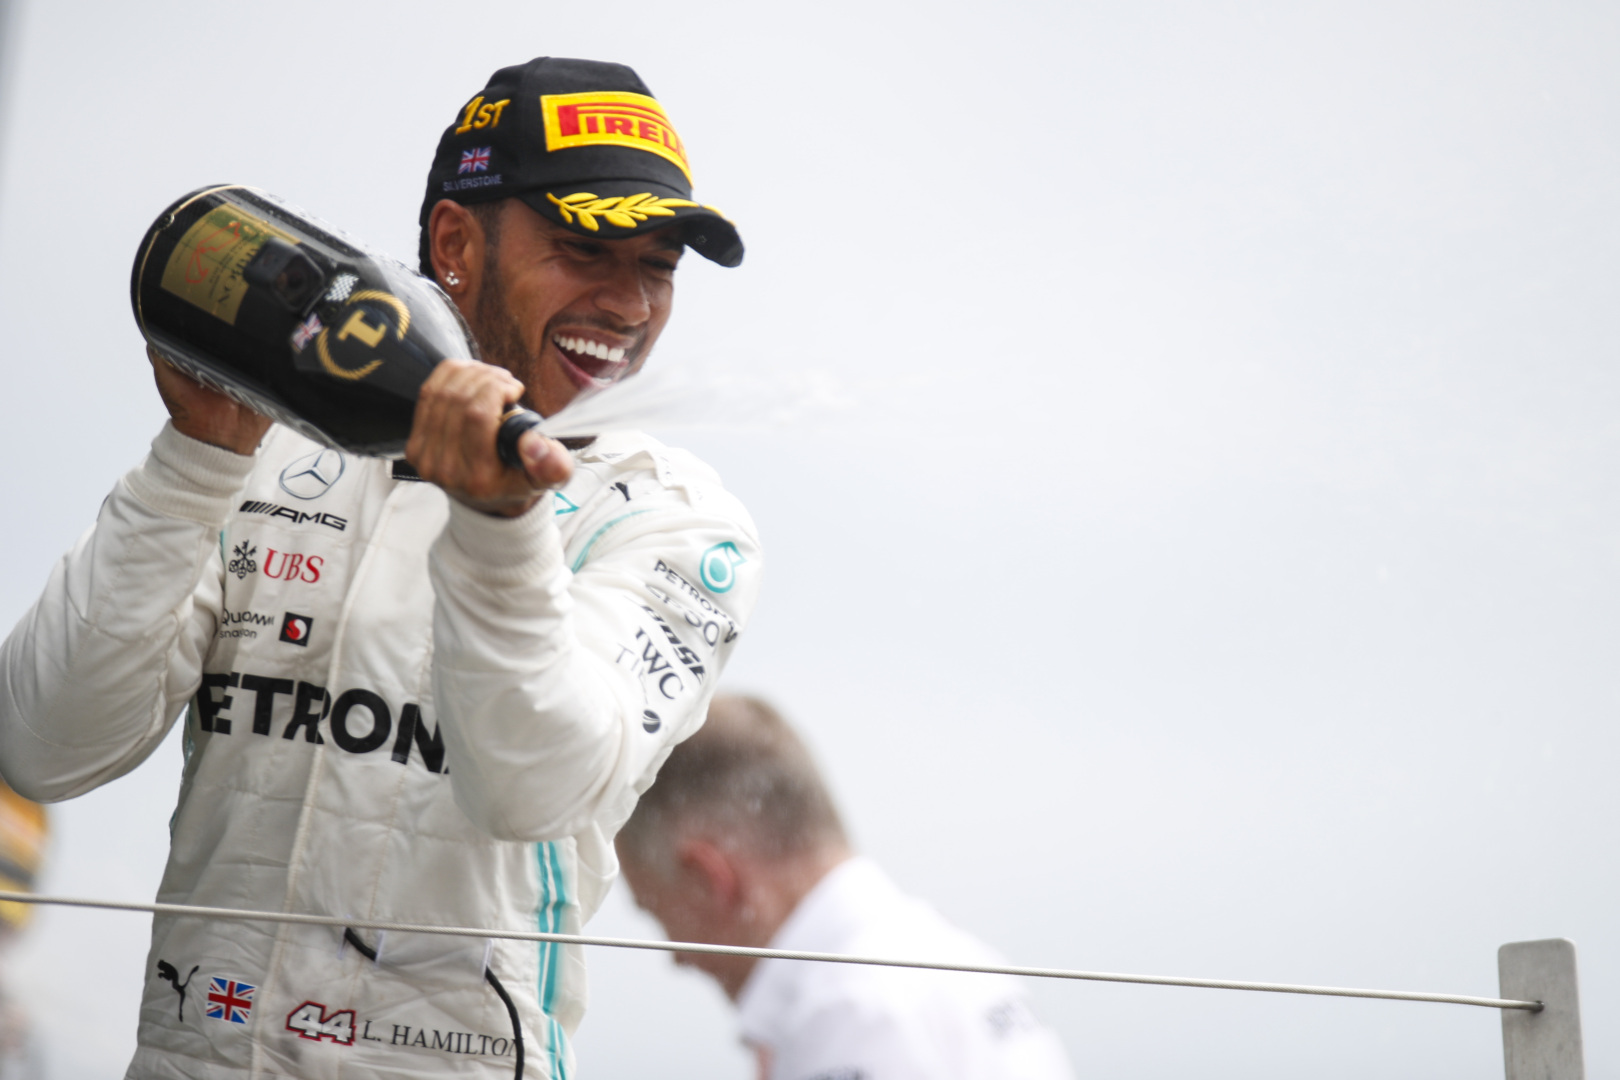 N. Rosbergas L. Hamiltoną laiko talentingiausiu pilotu F-1 istorijoje